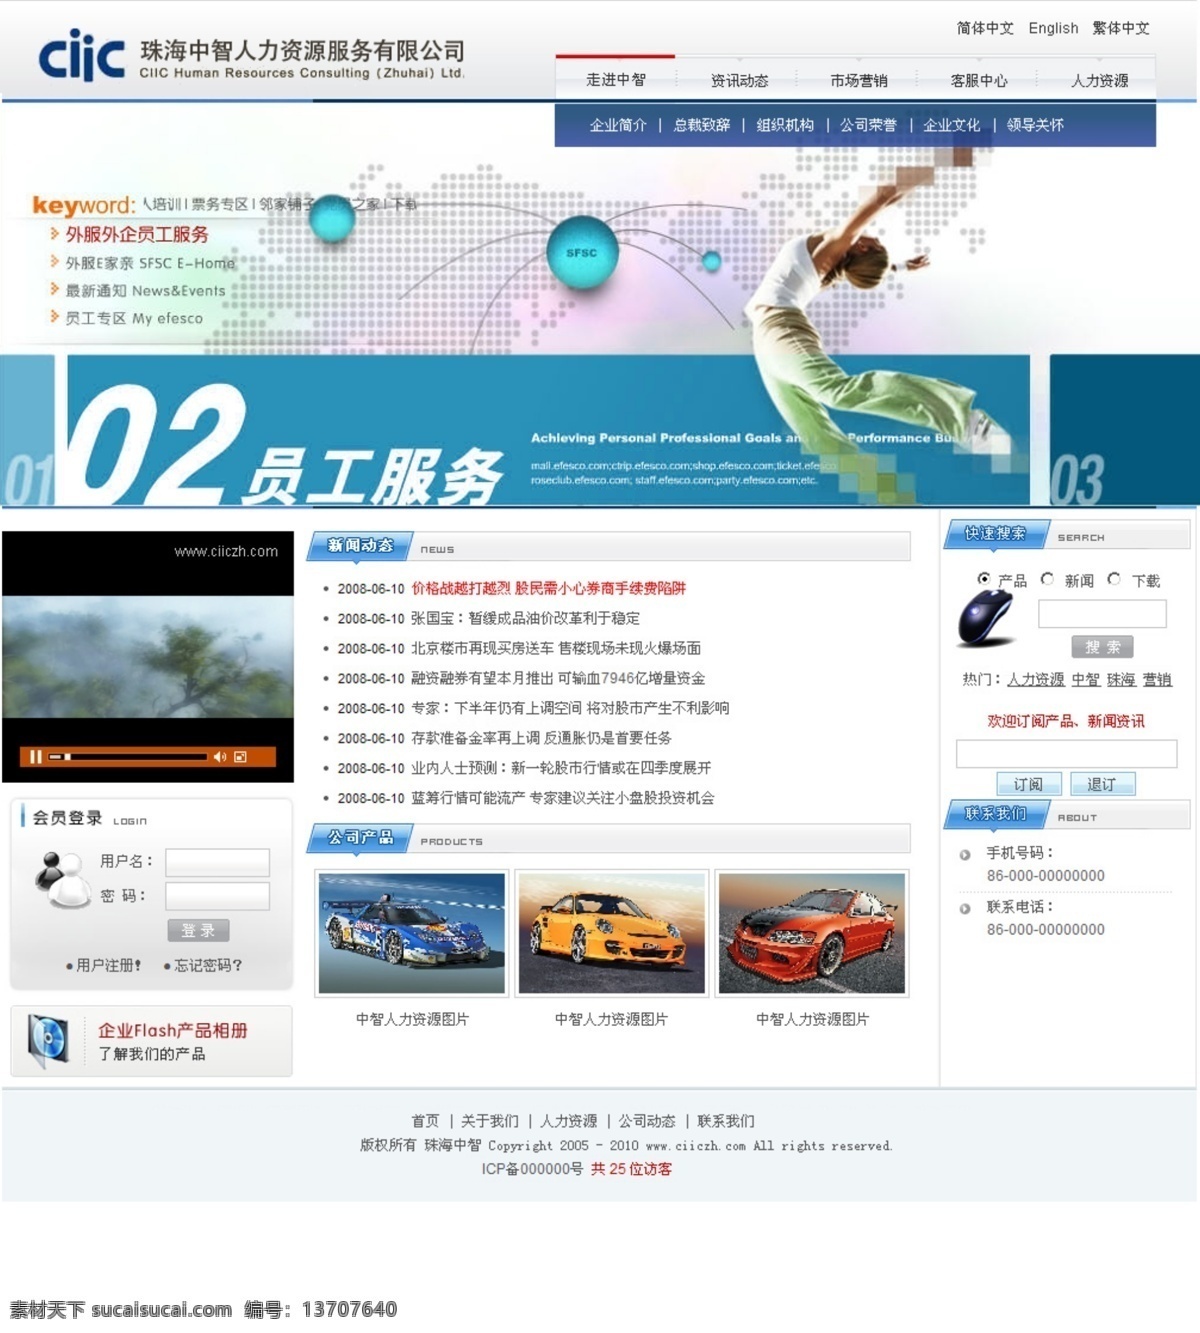 珠海 中 智 网页 改版 原件 珠海中智 网页设计 2011 改版源文件 中文模版 网页模板 源文件 白色